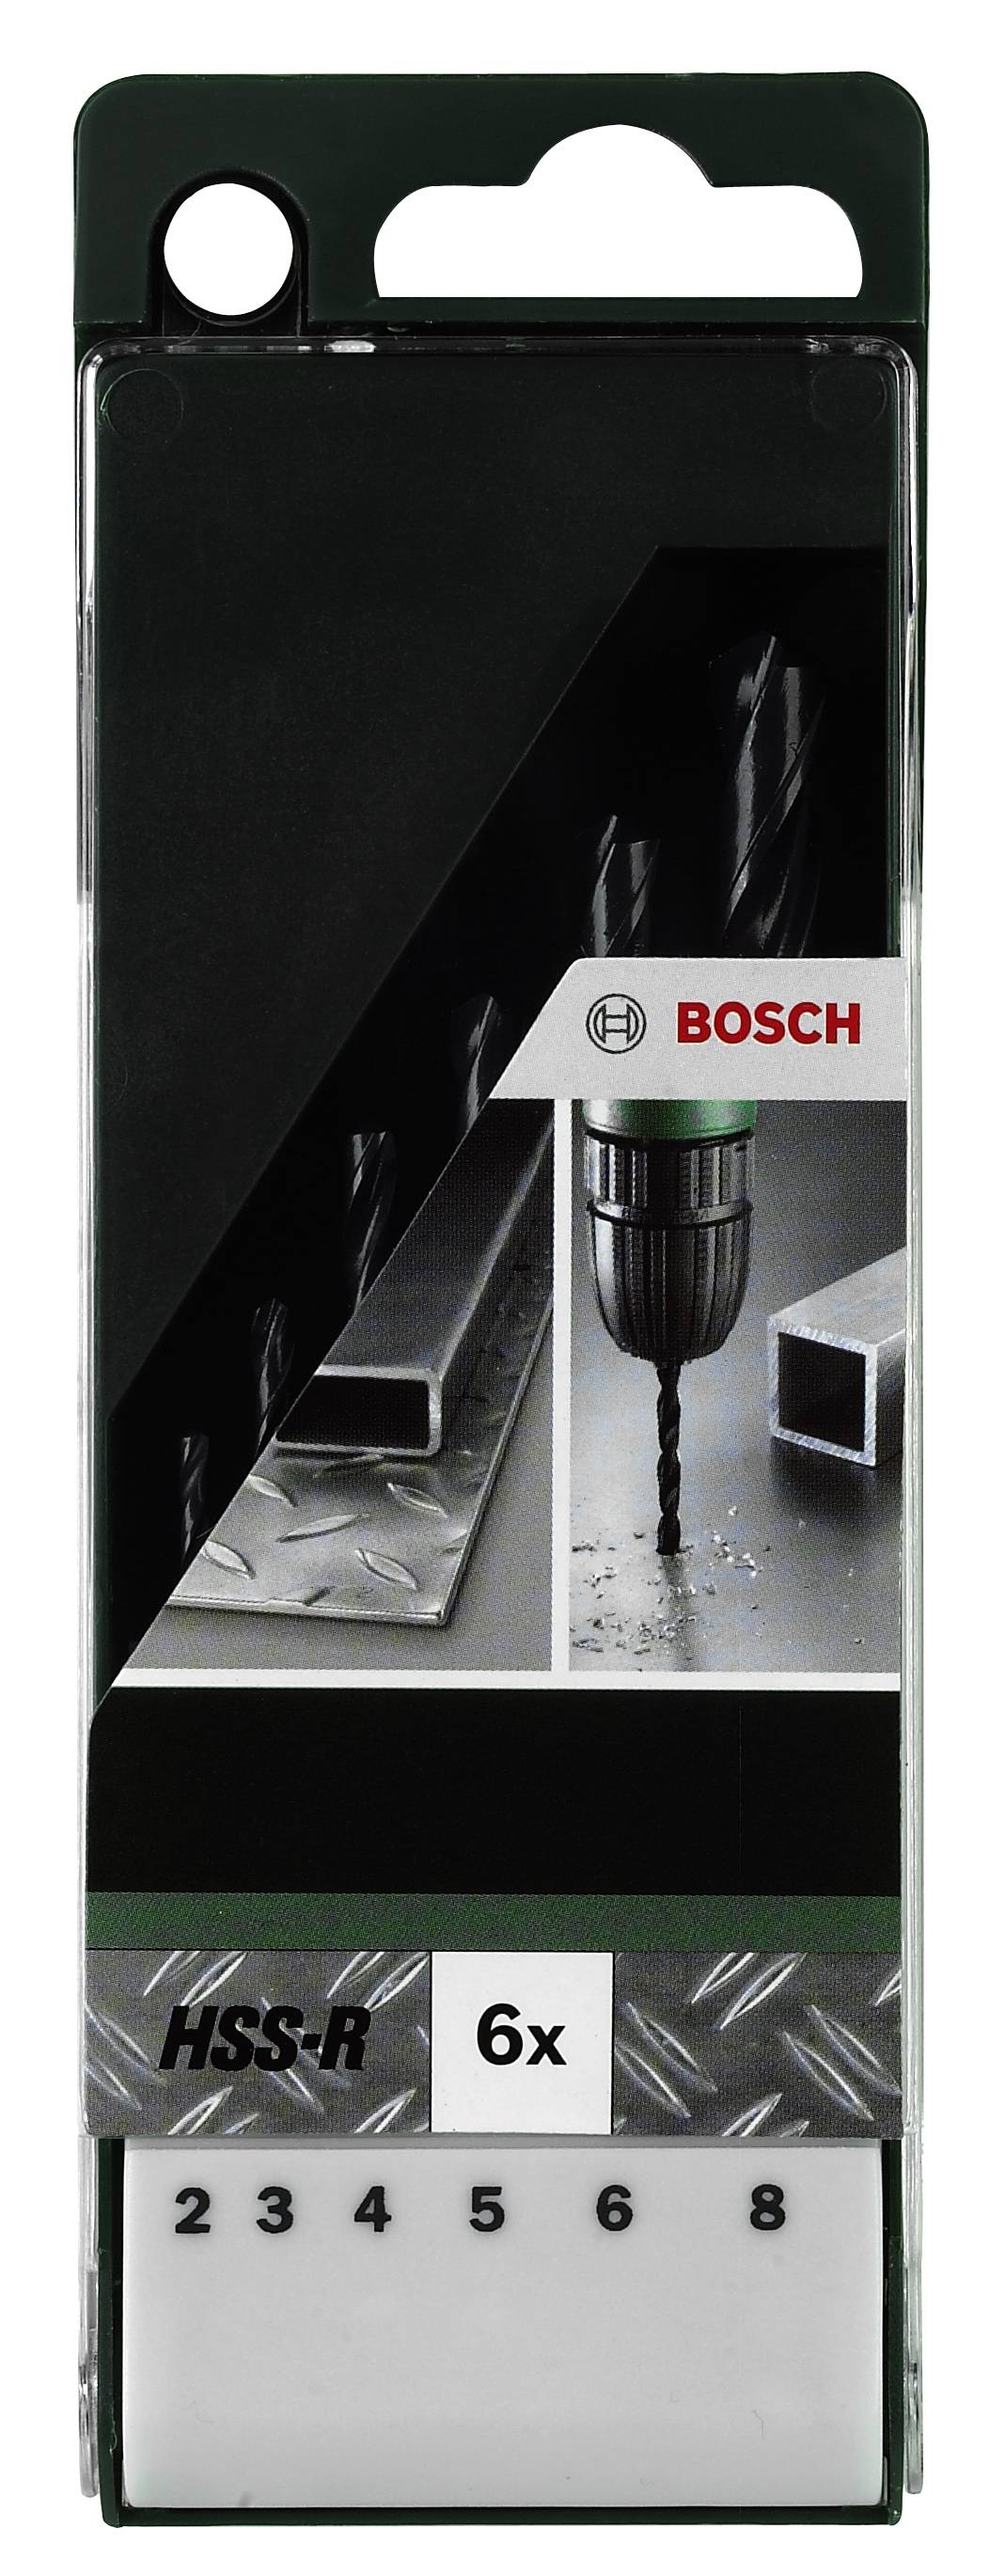 BOSCH HSS Metall-Spiralbohrer-Set 6teilig 2609255029 rollgewalzt DIN 338 Zylinderschaft 1 Set (26092